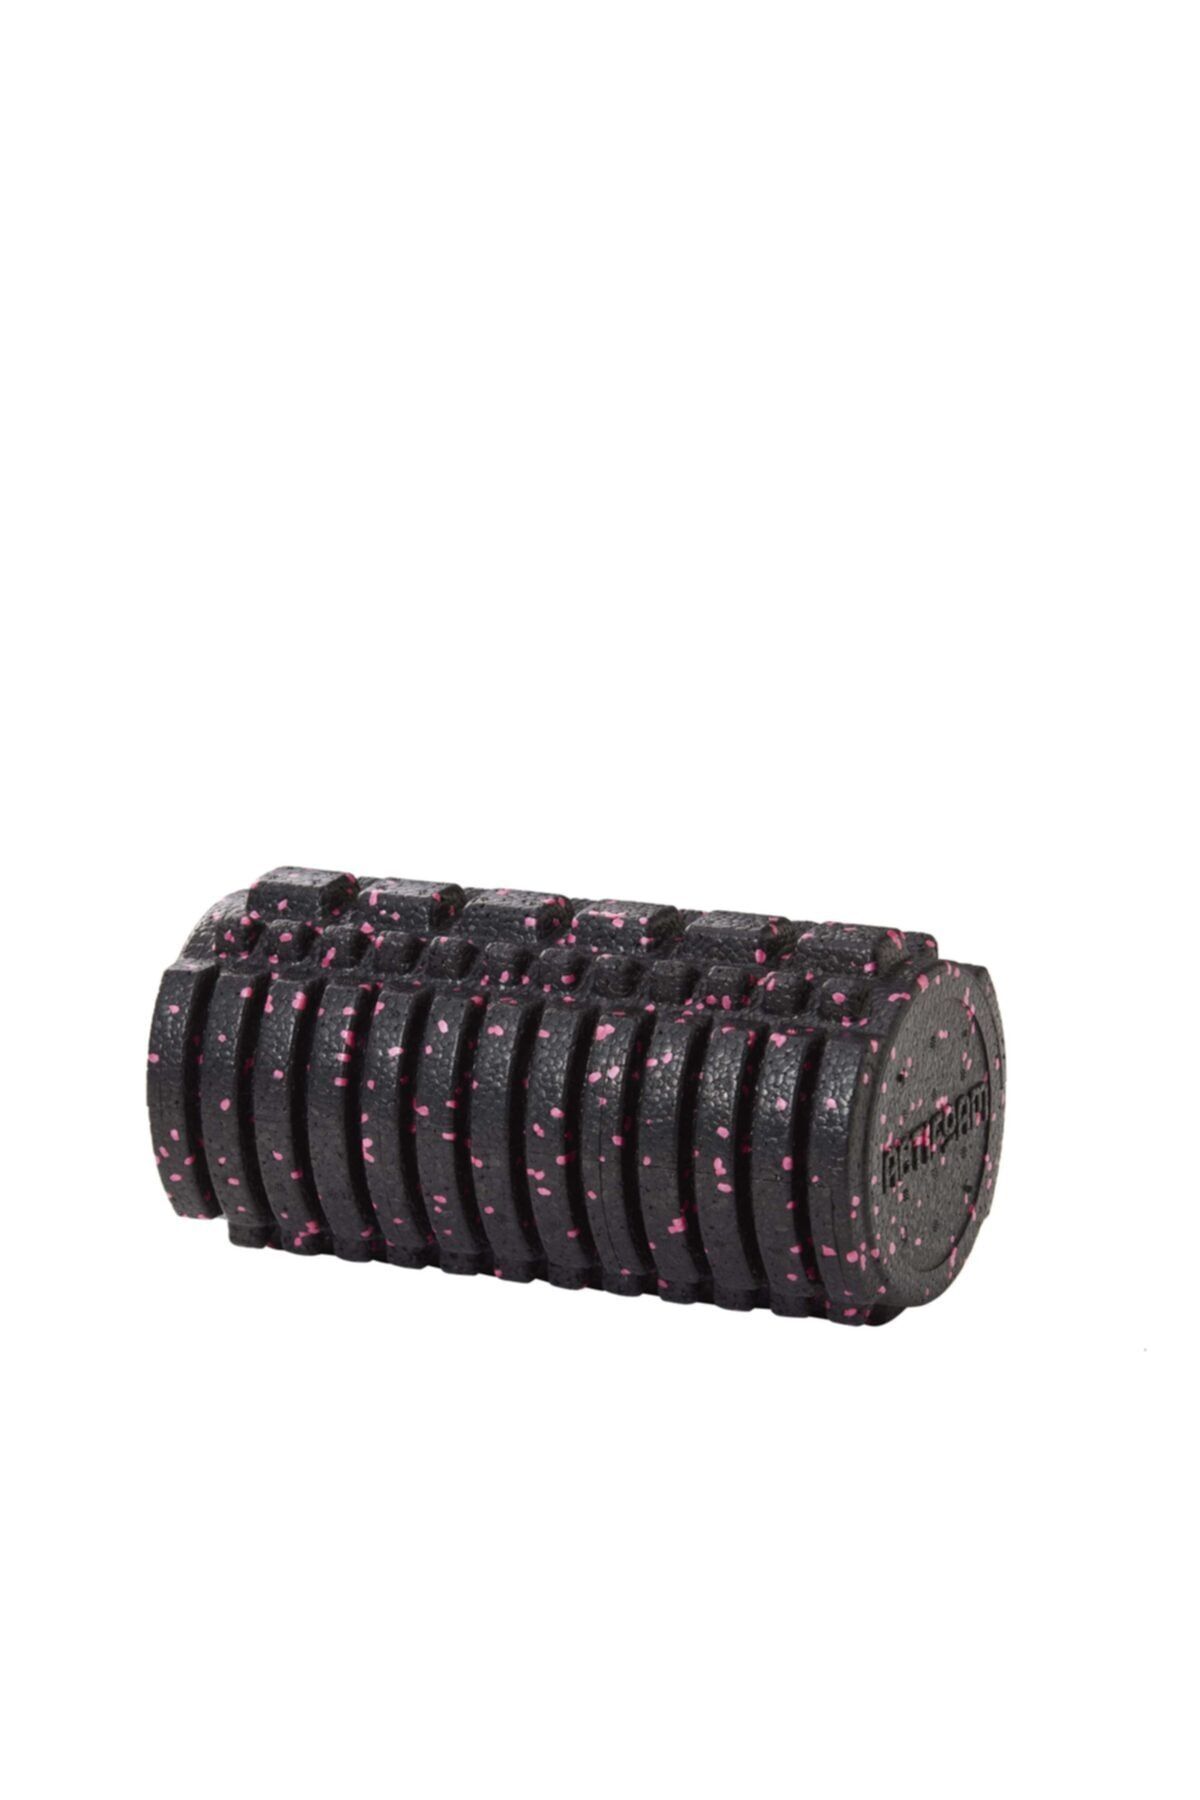 Tosima Foam Roller Masaj Köpüğü Masaj Rulosu 30 Cm